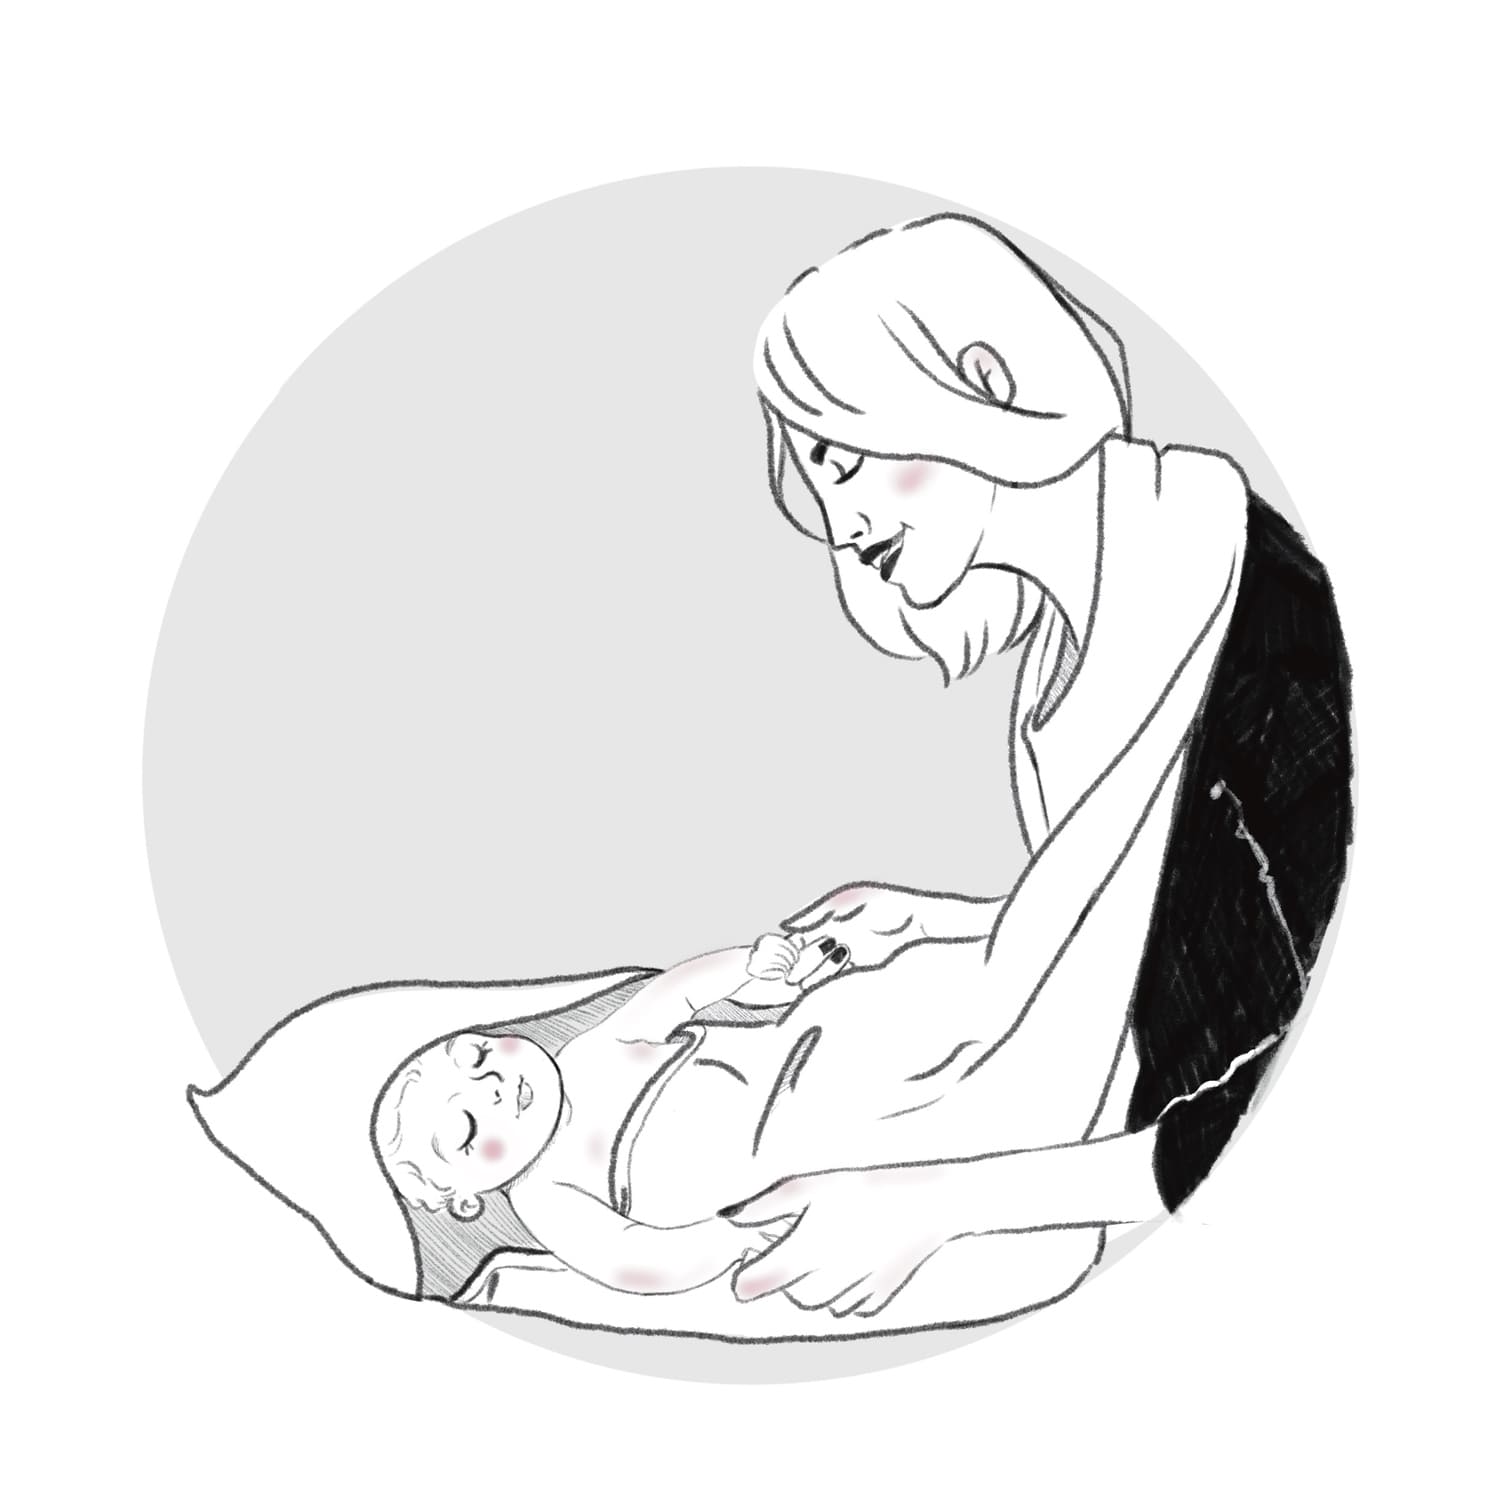 Idée cadeau pratique et utile : cape de bain tablier pour bébé. Accroché au cou de la maman (illustration), les mains sont libres pour bien tenir bébé et s'en occuper sans être gênée par la serviette de bain.